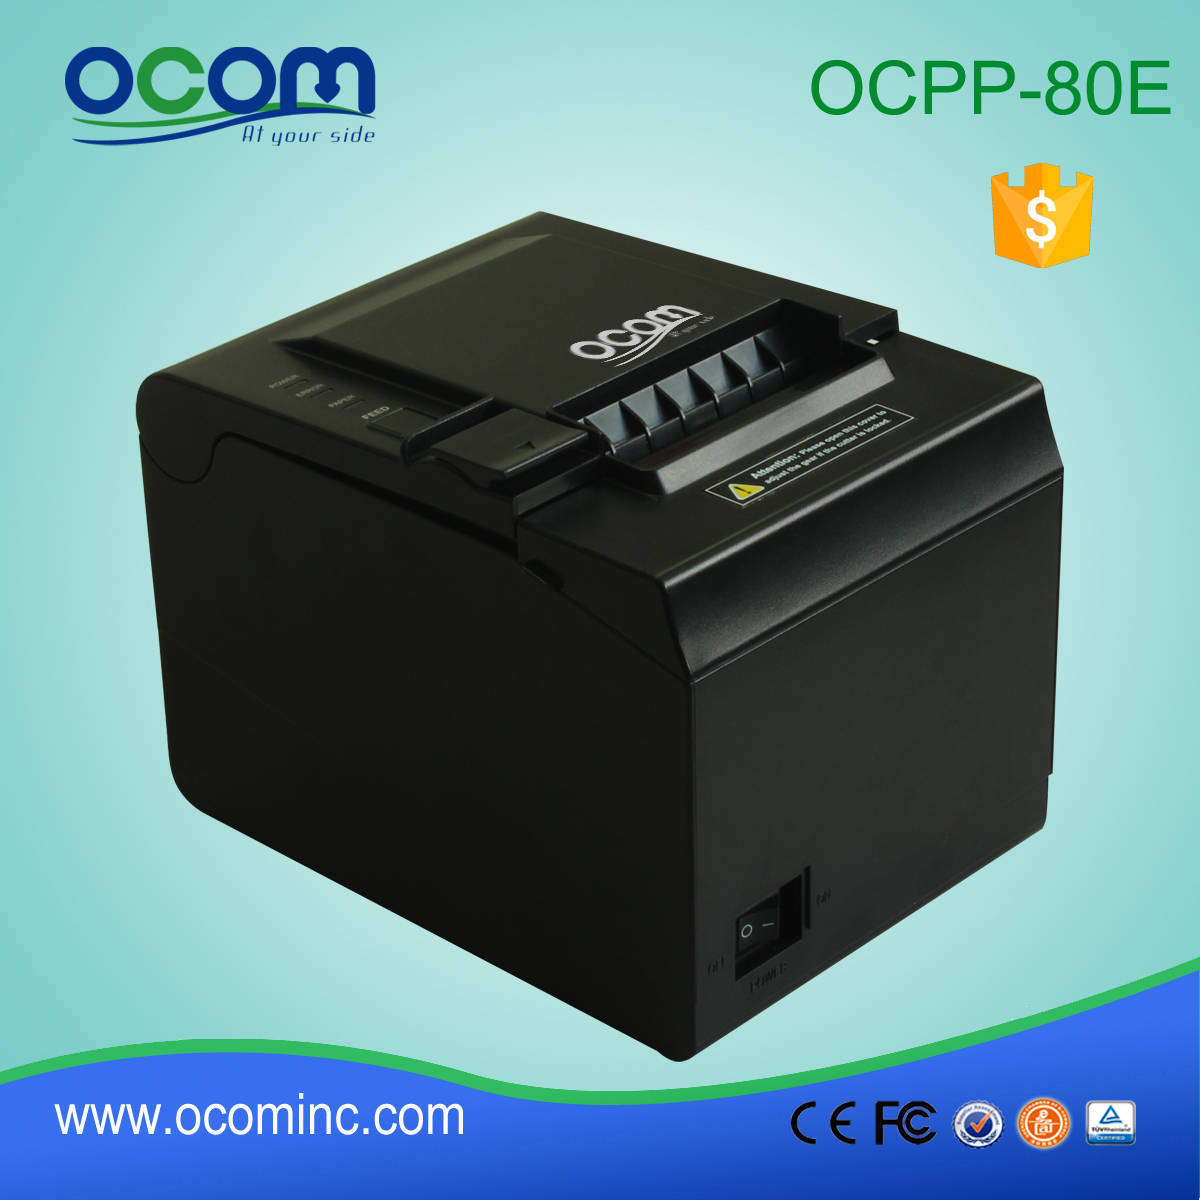 ОКПП-80Е Китайская фабрика тепловой последовательной сетевой принтер